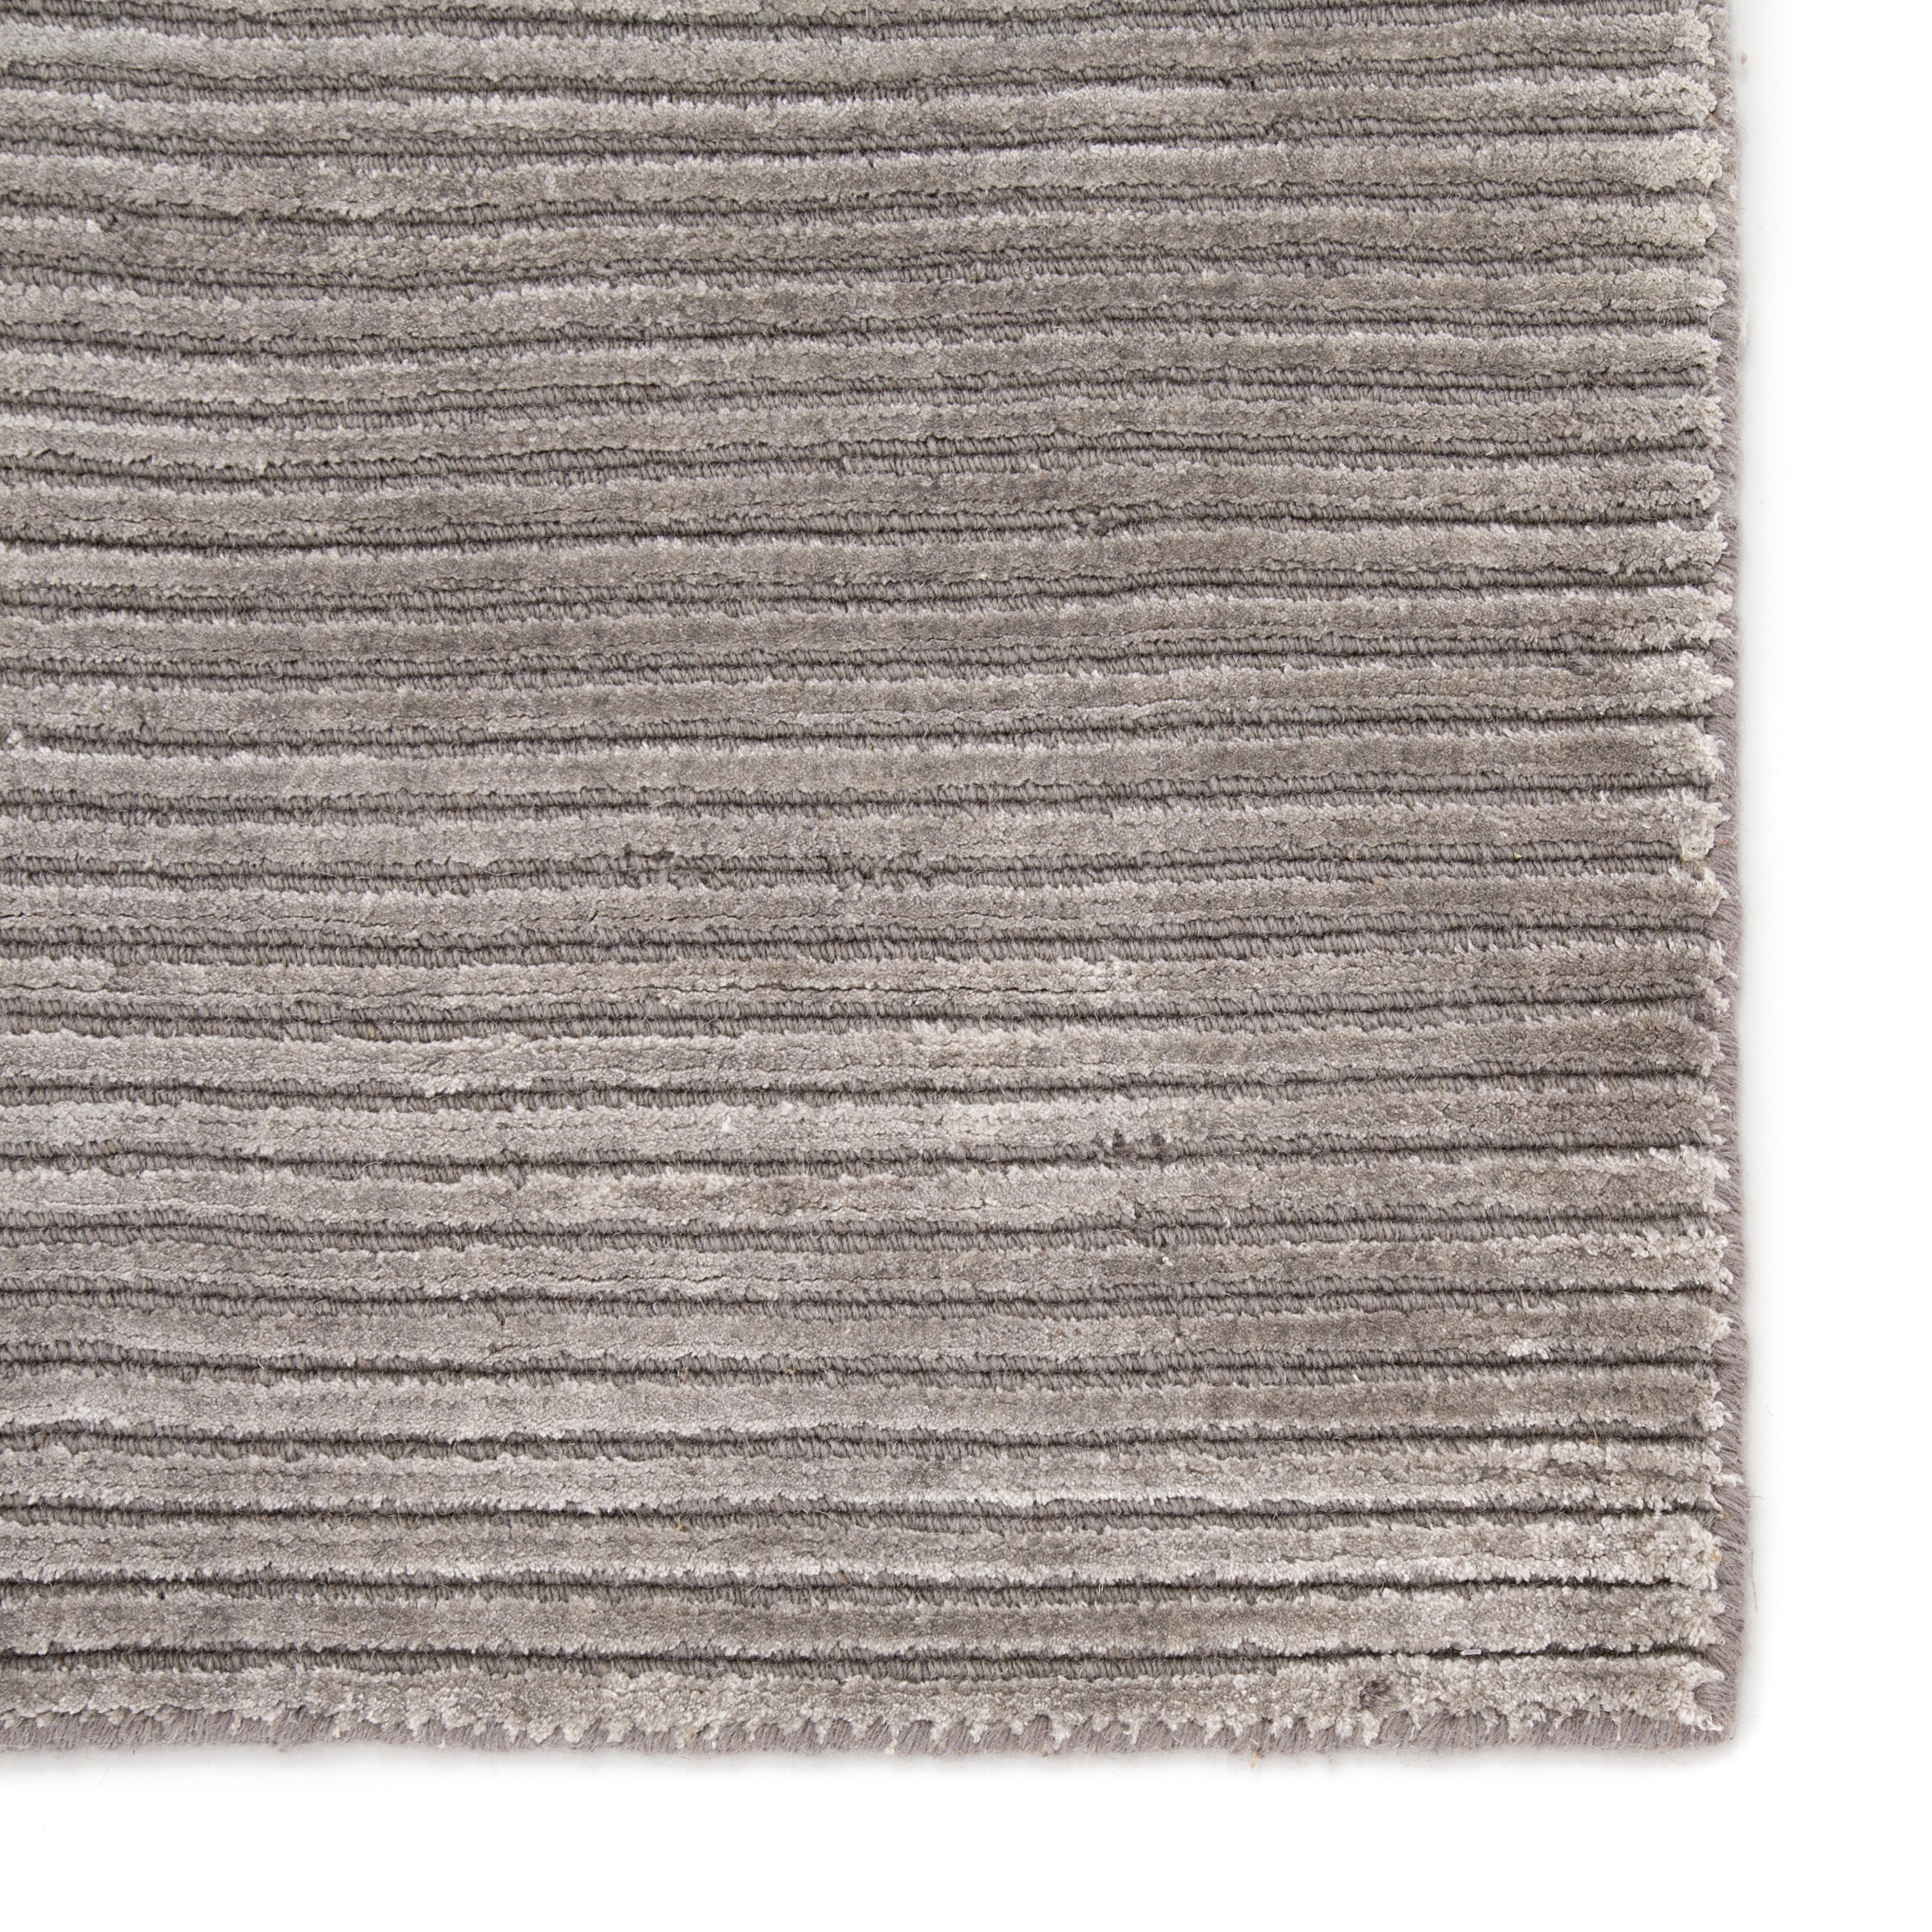 Basis Handmade Solid Gray/ Silver Area Rug (9' X 12') - Image 3